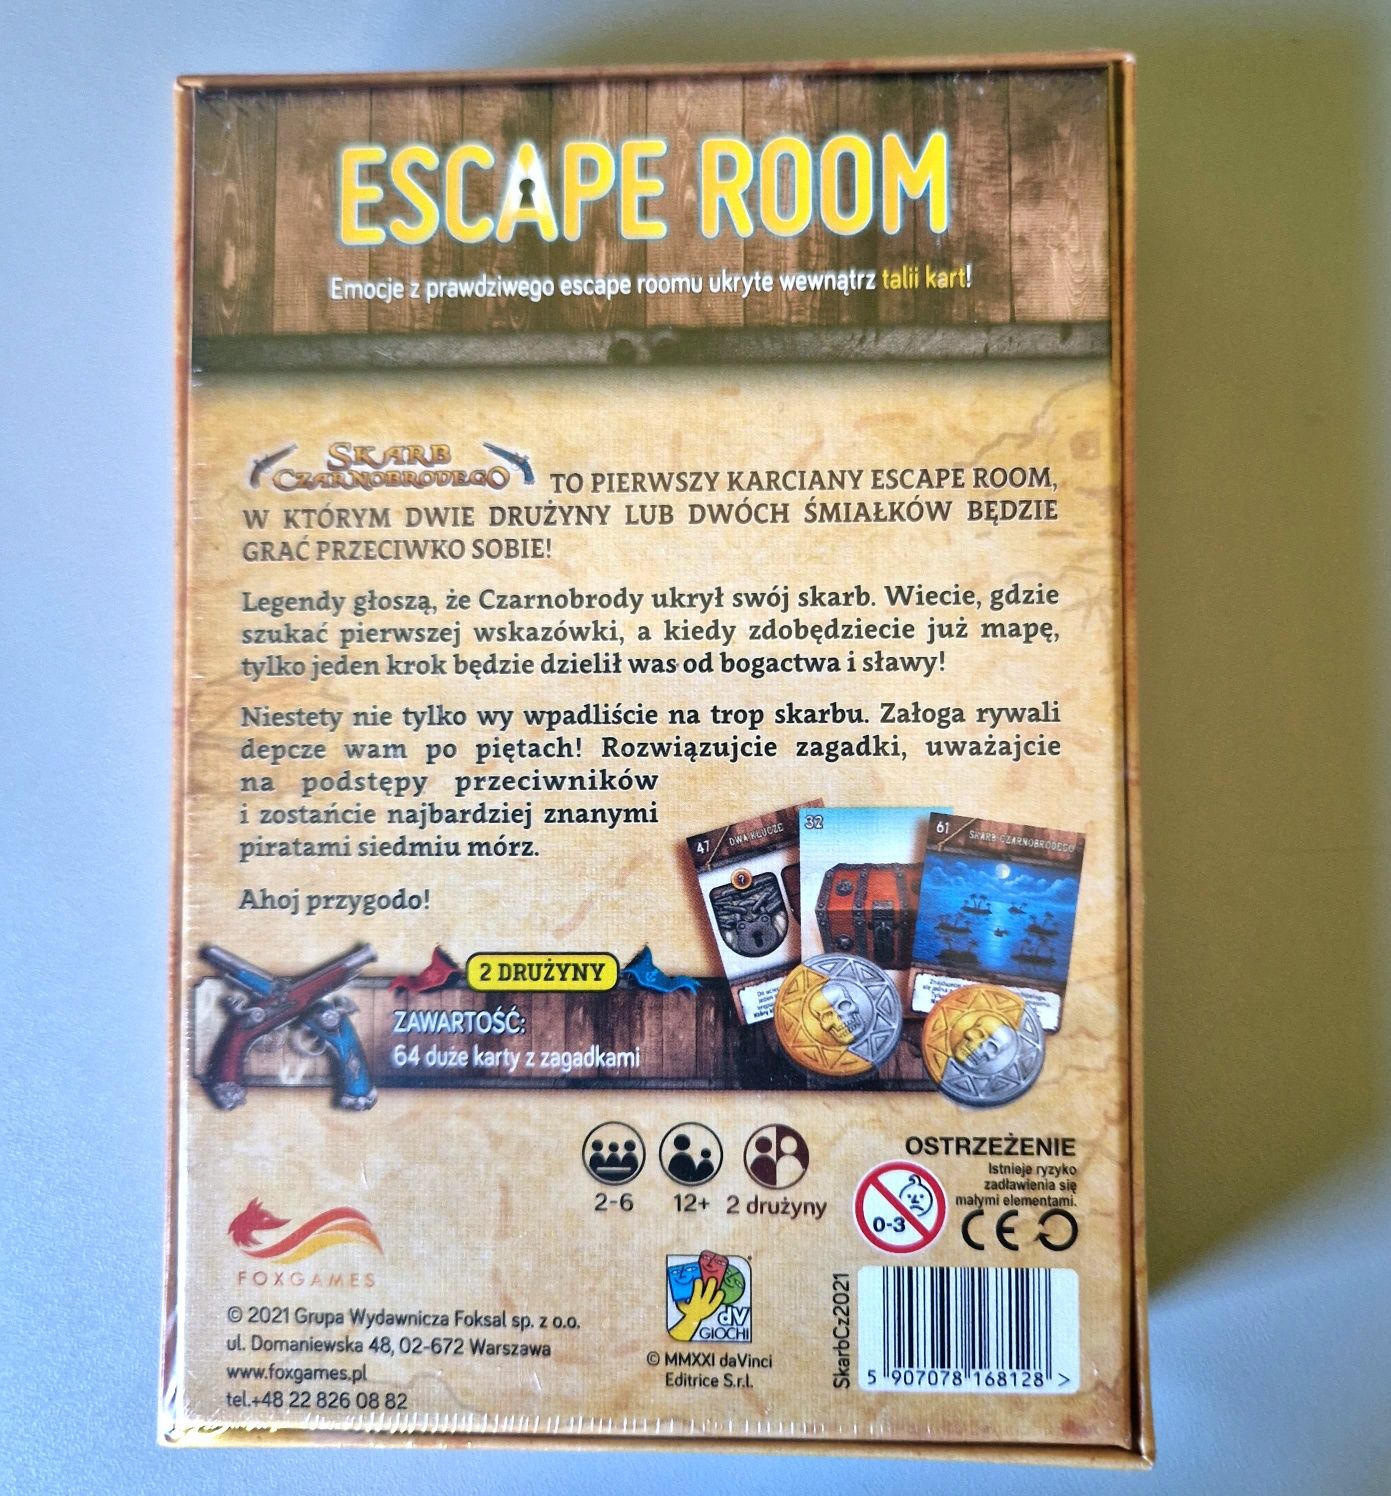 Escape room-skarb Czarnobrodego
Stan:nowe 
Opakowanie zawiera:
-instru